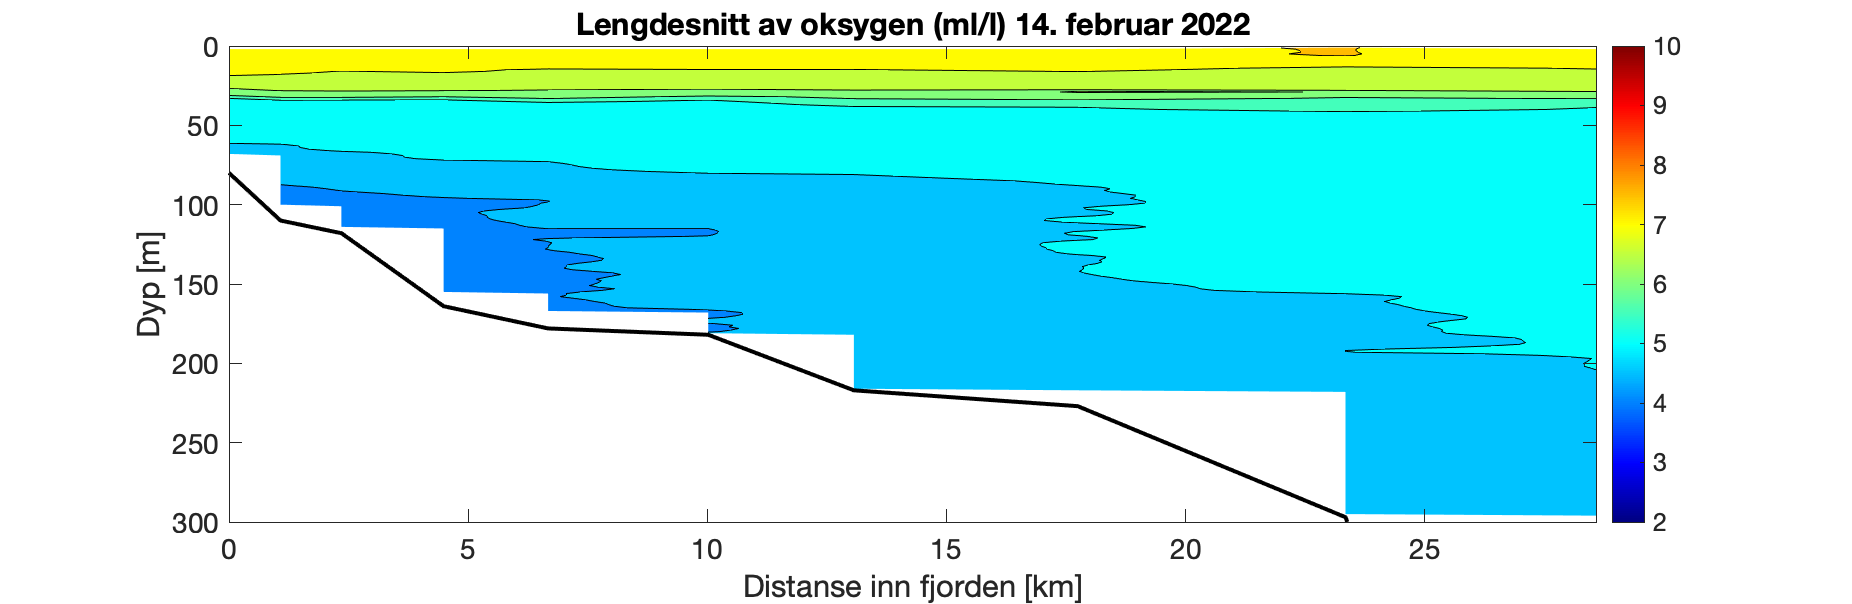 Figuren viser et histogram som illustrerer variasjon i oksygeninnhold (ml/l) i vannsøylen (0-300 meter) utover i Fjærlandsfjorden (0-30 km ut fjorden). Fargeskalaen representerer oksygeninnhold fra 10 ml/l (rødt) til 2 ml/l (fiolett). Det er relativt jevn dybdefordeling i O2 innhold langs hele fjorden i de øvre 40 m med verdier på 6 – 7 ml/l. Dypere enn 50 m er O2 innholdet 4,5 til 6,5 ml/l gjennom vannsøylen, med gradvis høyere innhold utover i fjorden.